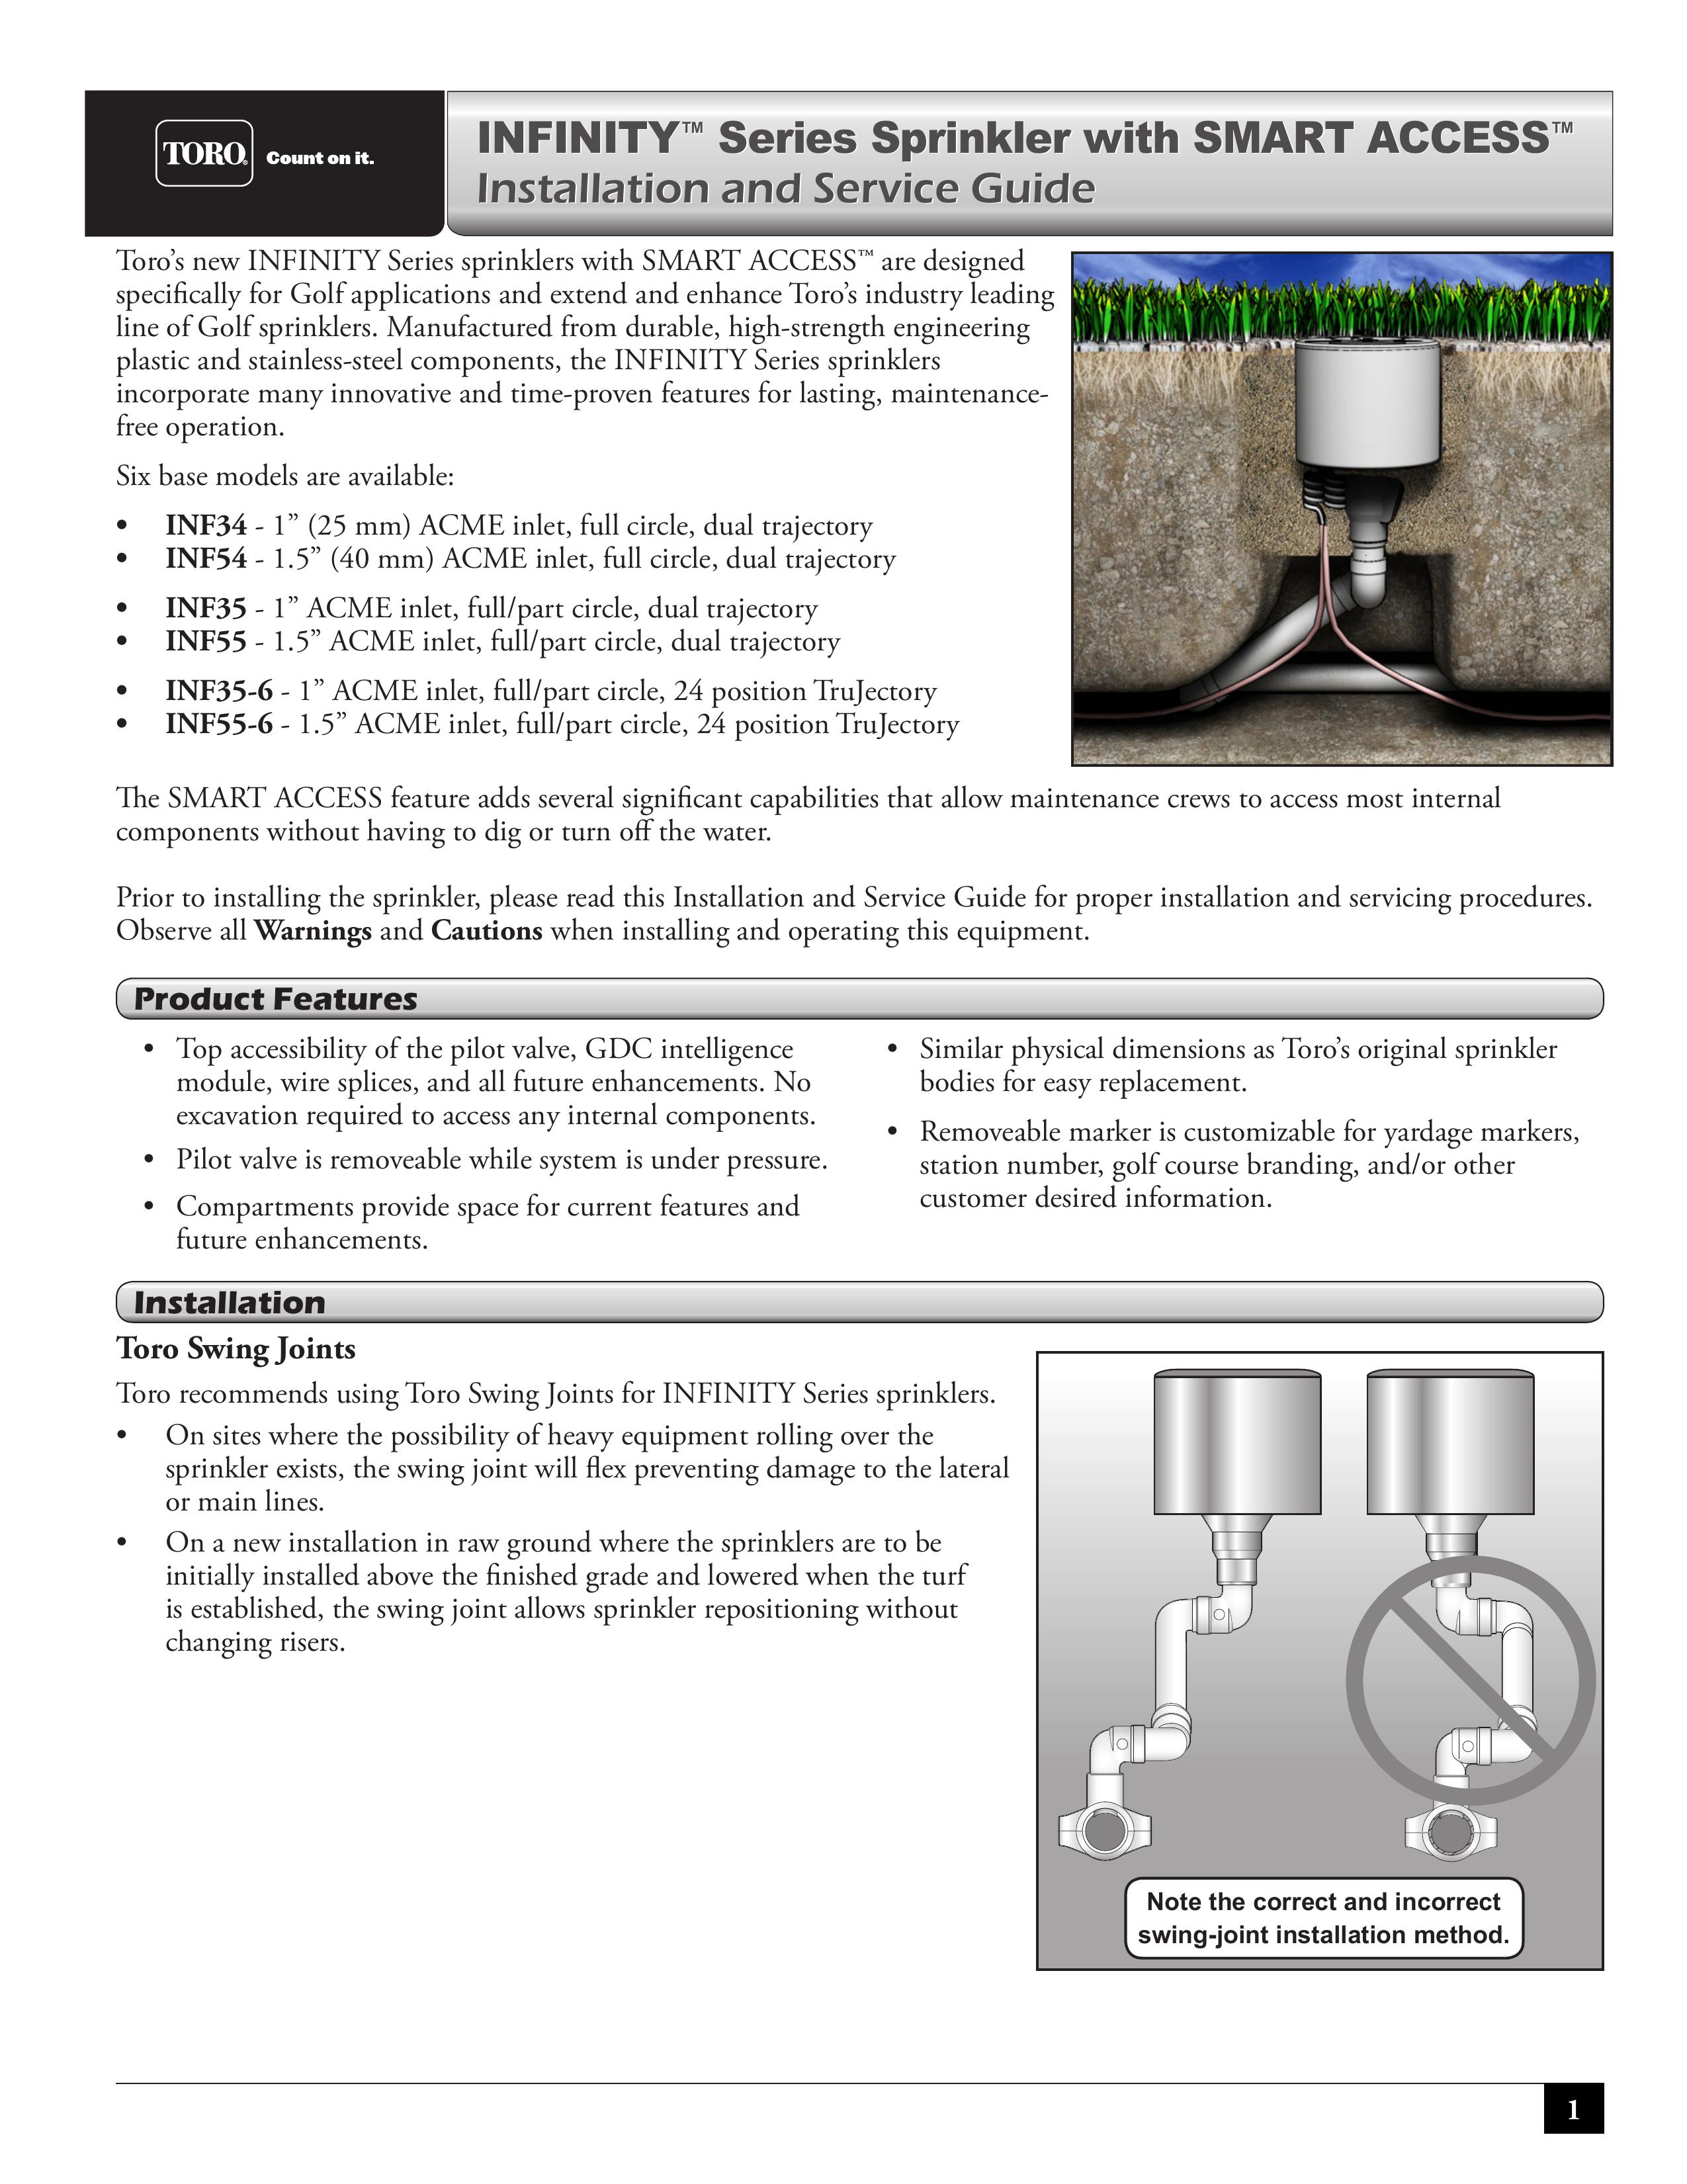 Toro INF54 Sprinkler User Manual